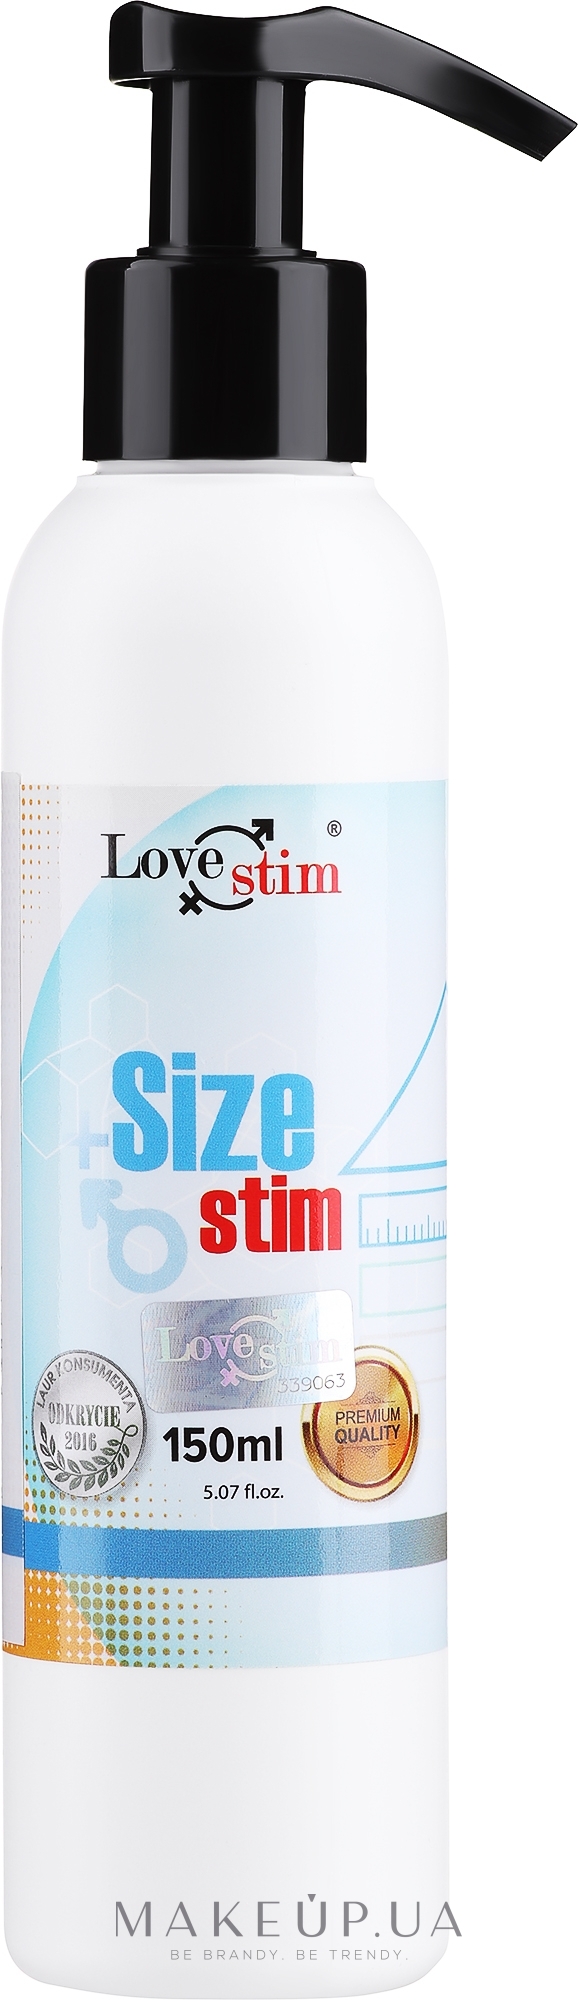 Гель для збільшення статевого члена - Love Stim +Size Stim — фото 150ml